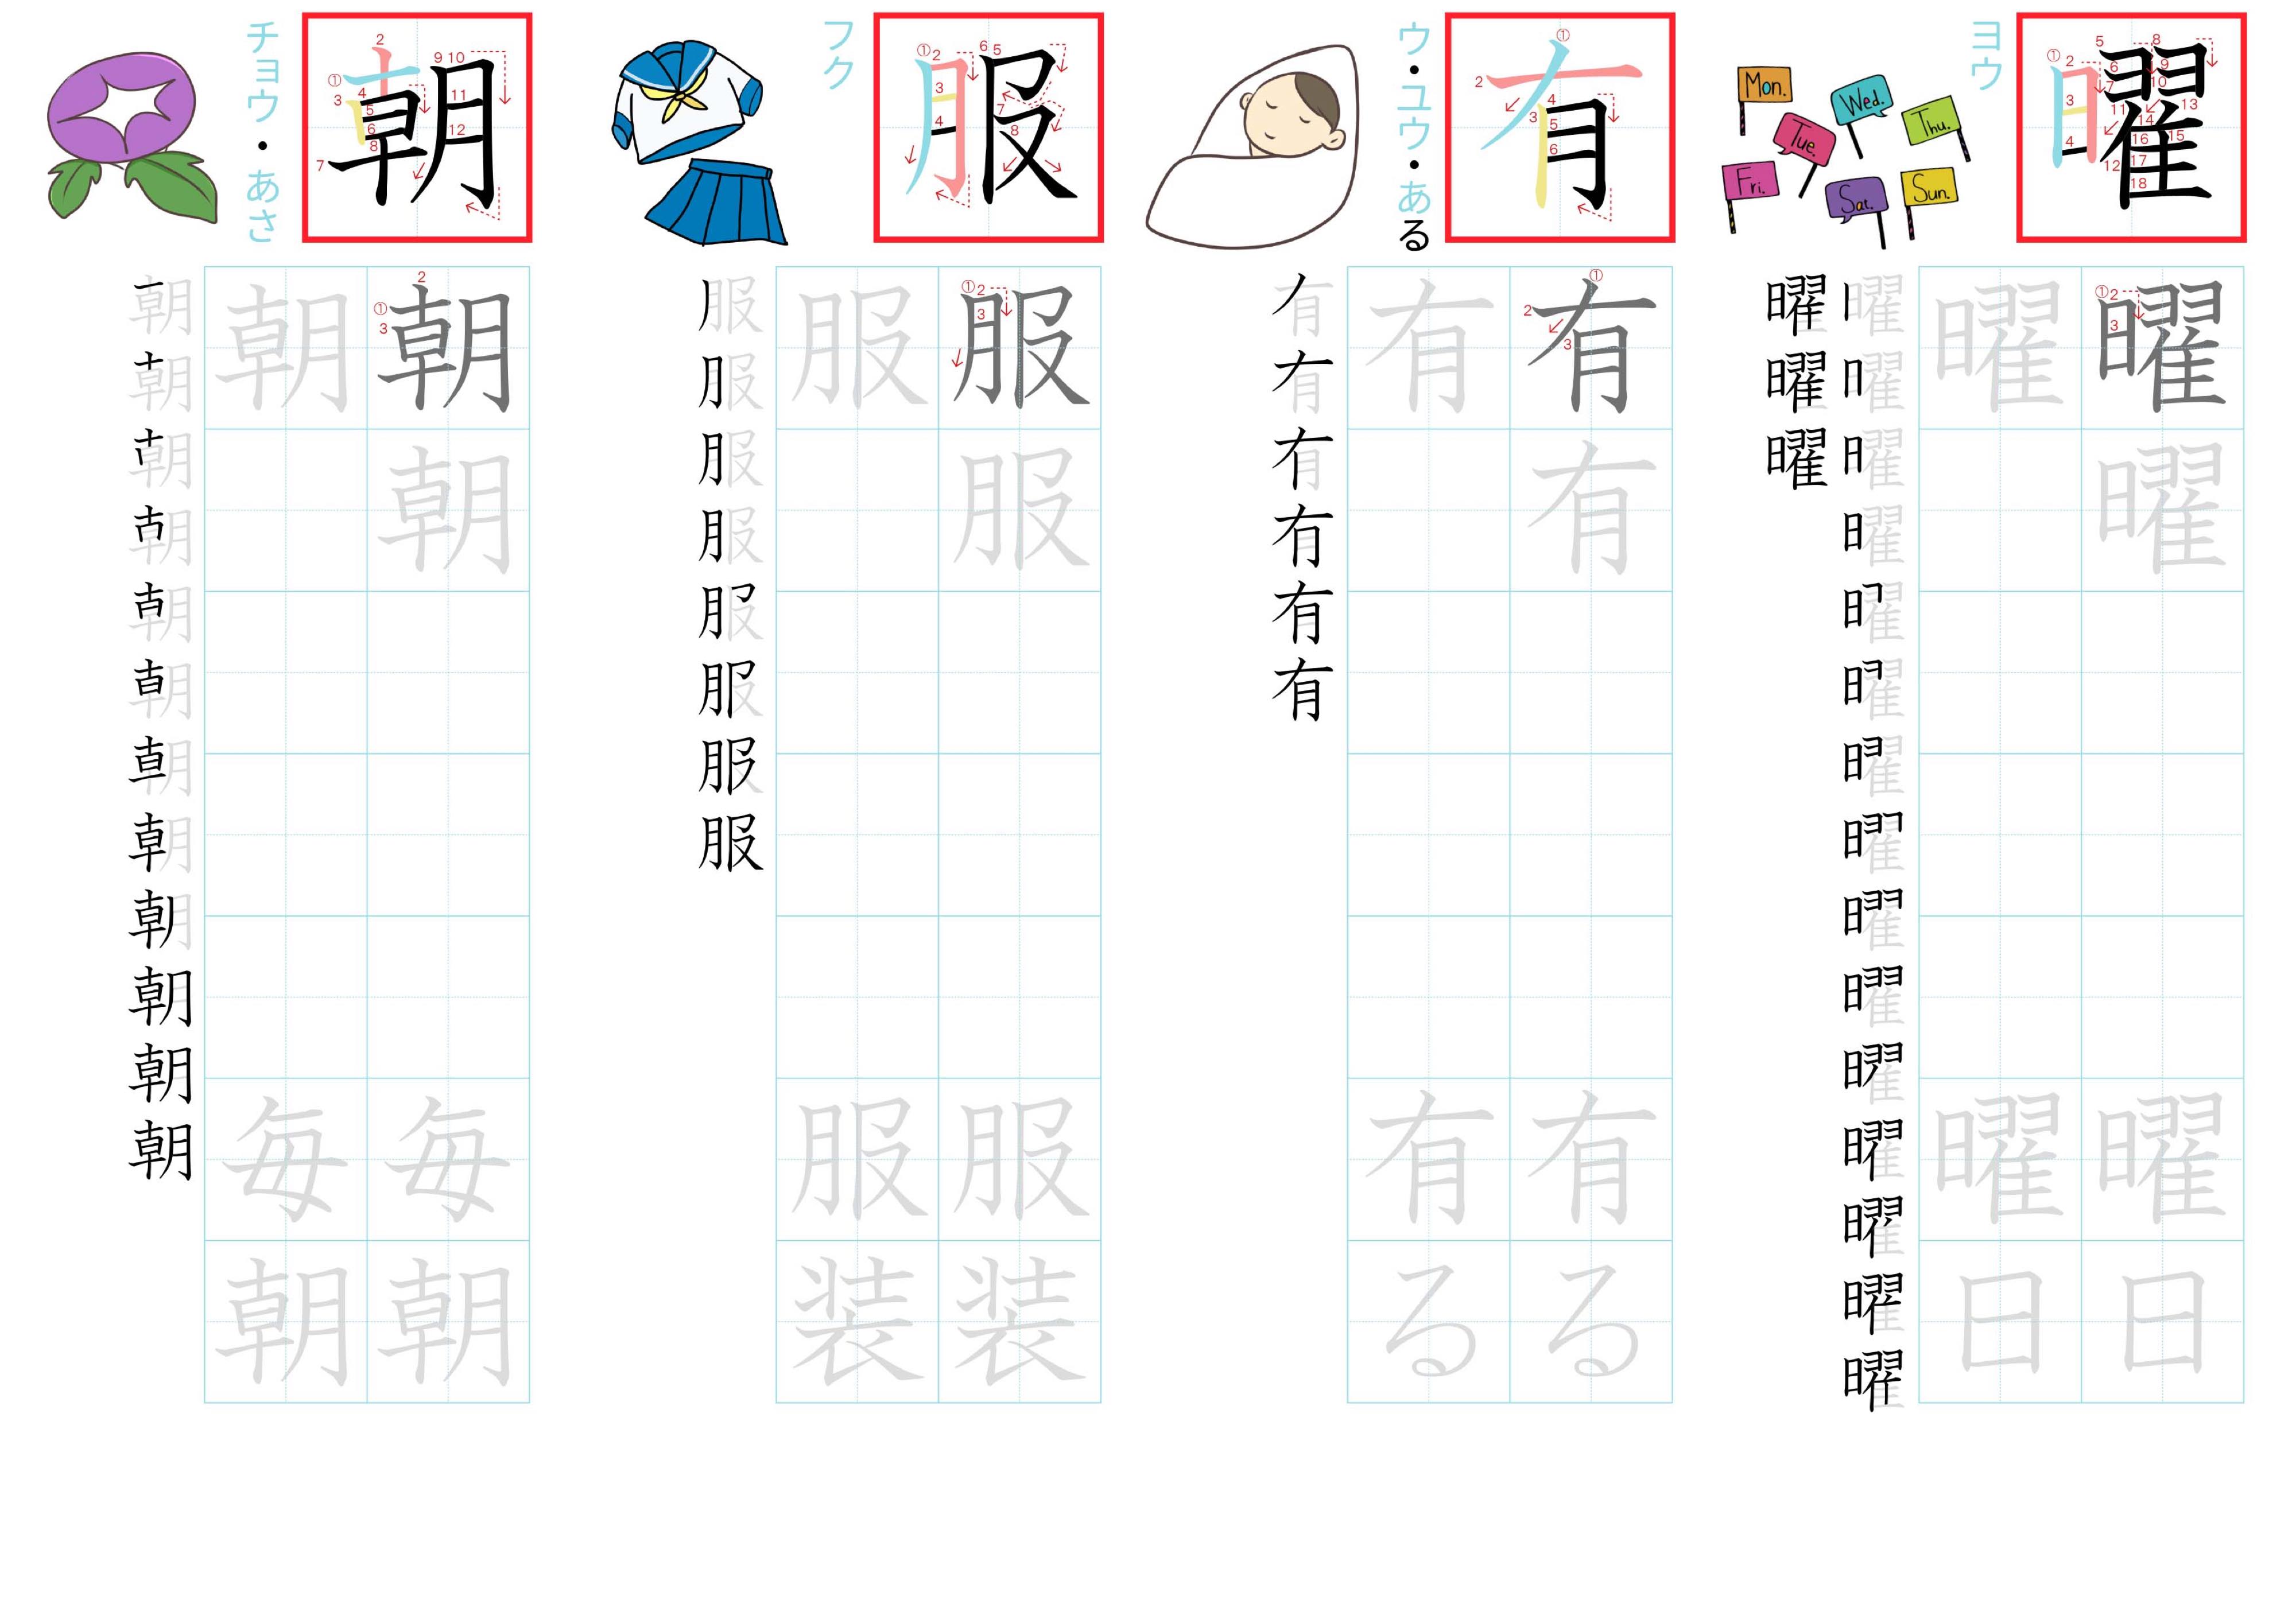 kanji-practice-card-n4-japanese-041